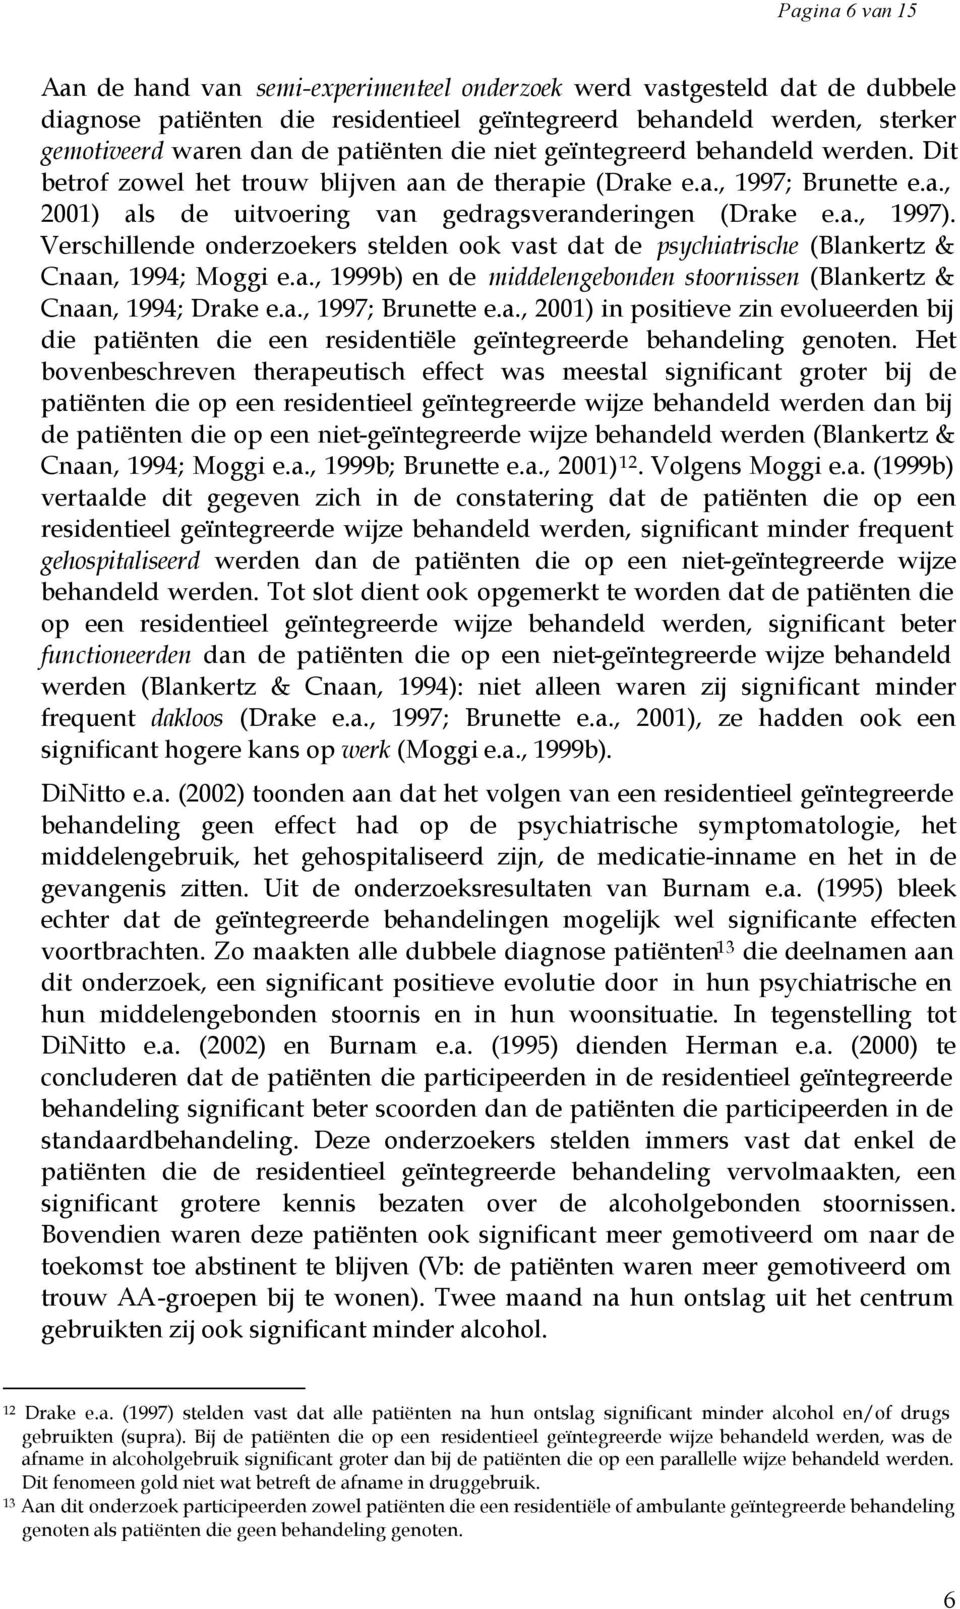 Verschillende onderzoekers stelden ook vast dat de psychiatrische (Blankertz & Cnaan, 1994; Moggi e.a., 1999b) en de middelengebonden stoornissen (Blankertz & Cnaan, 1994; Drake e.a., 1997; Brunette e.